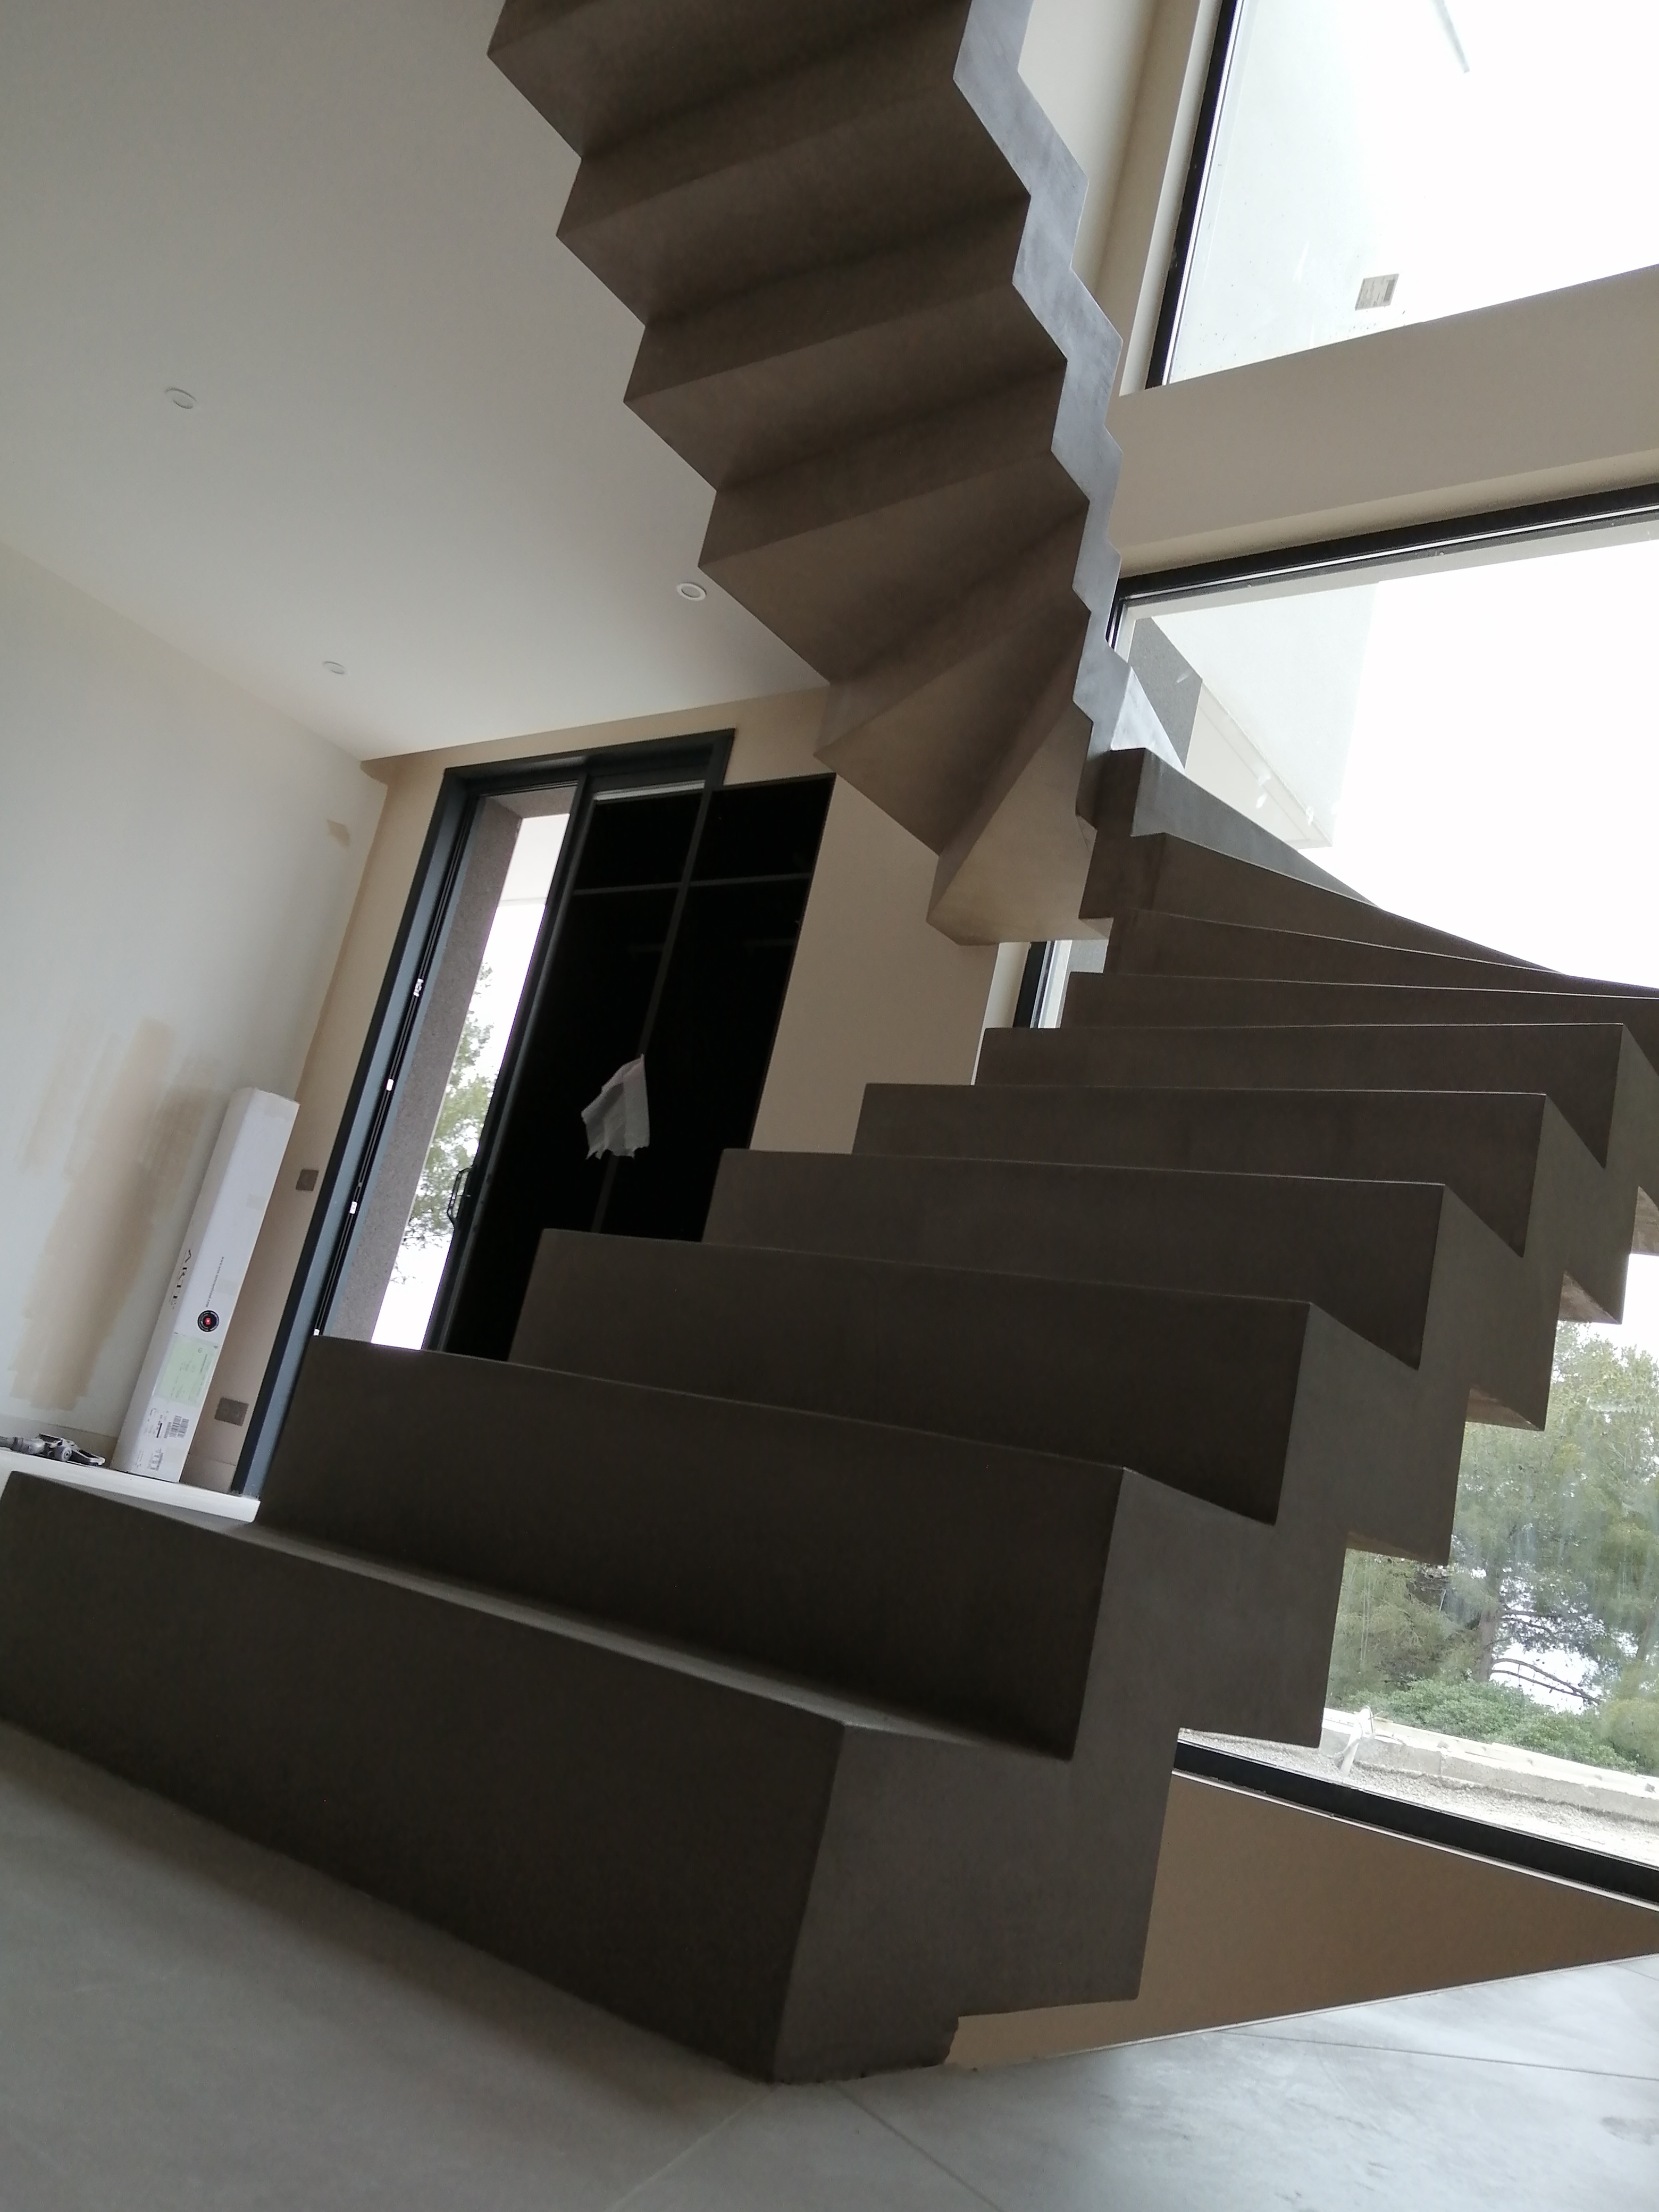 Technique de pose d'un béton ciré sur une surface comme la complexité d'un escalier crémaillère